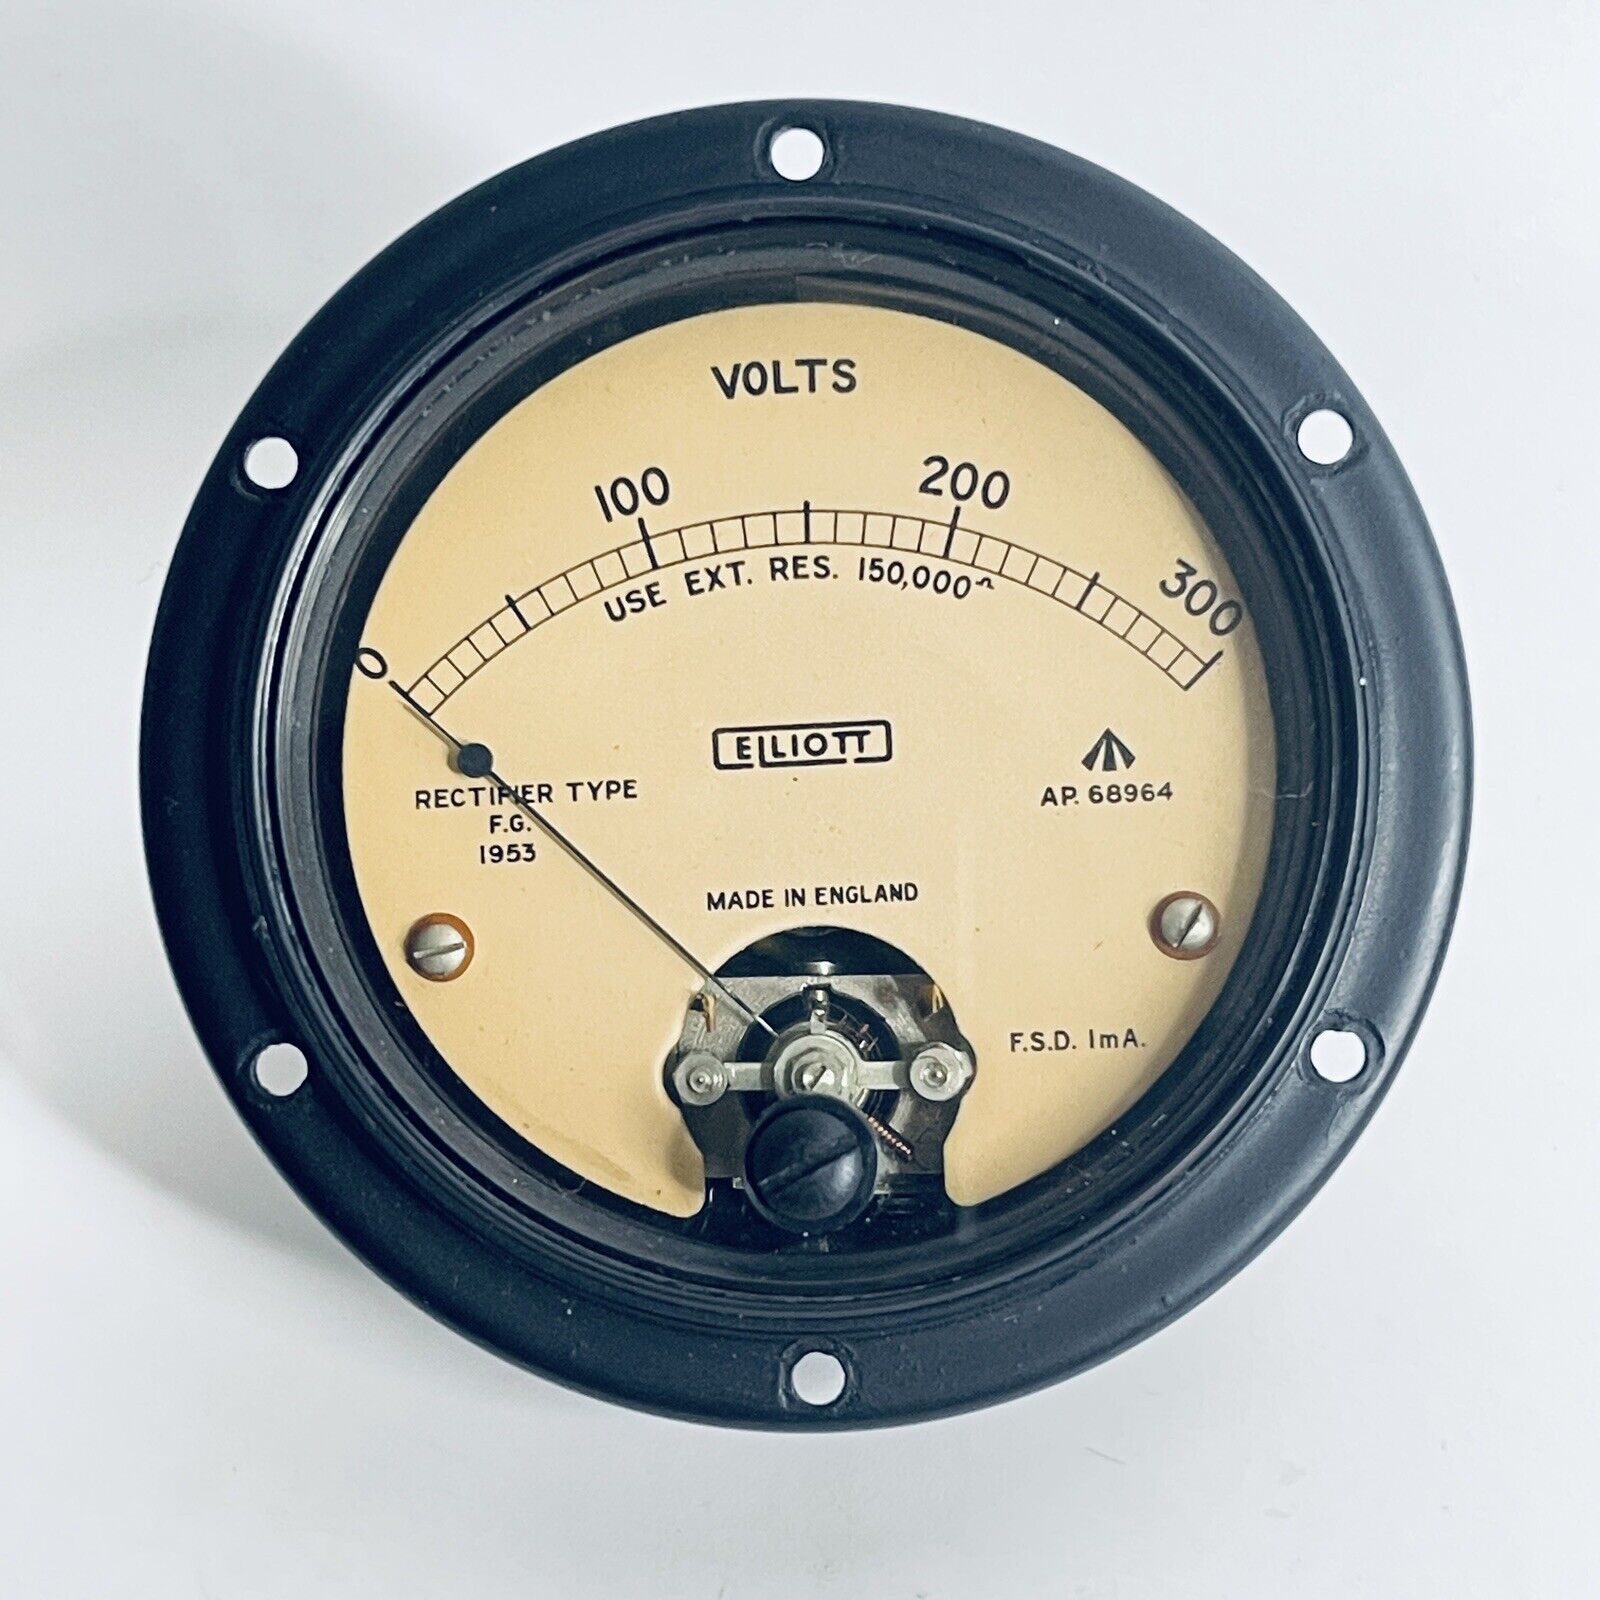 Vintage Elliot Voltmeter F.G. 1953 0-300V Gauge Vintage British Volt Meter Rare